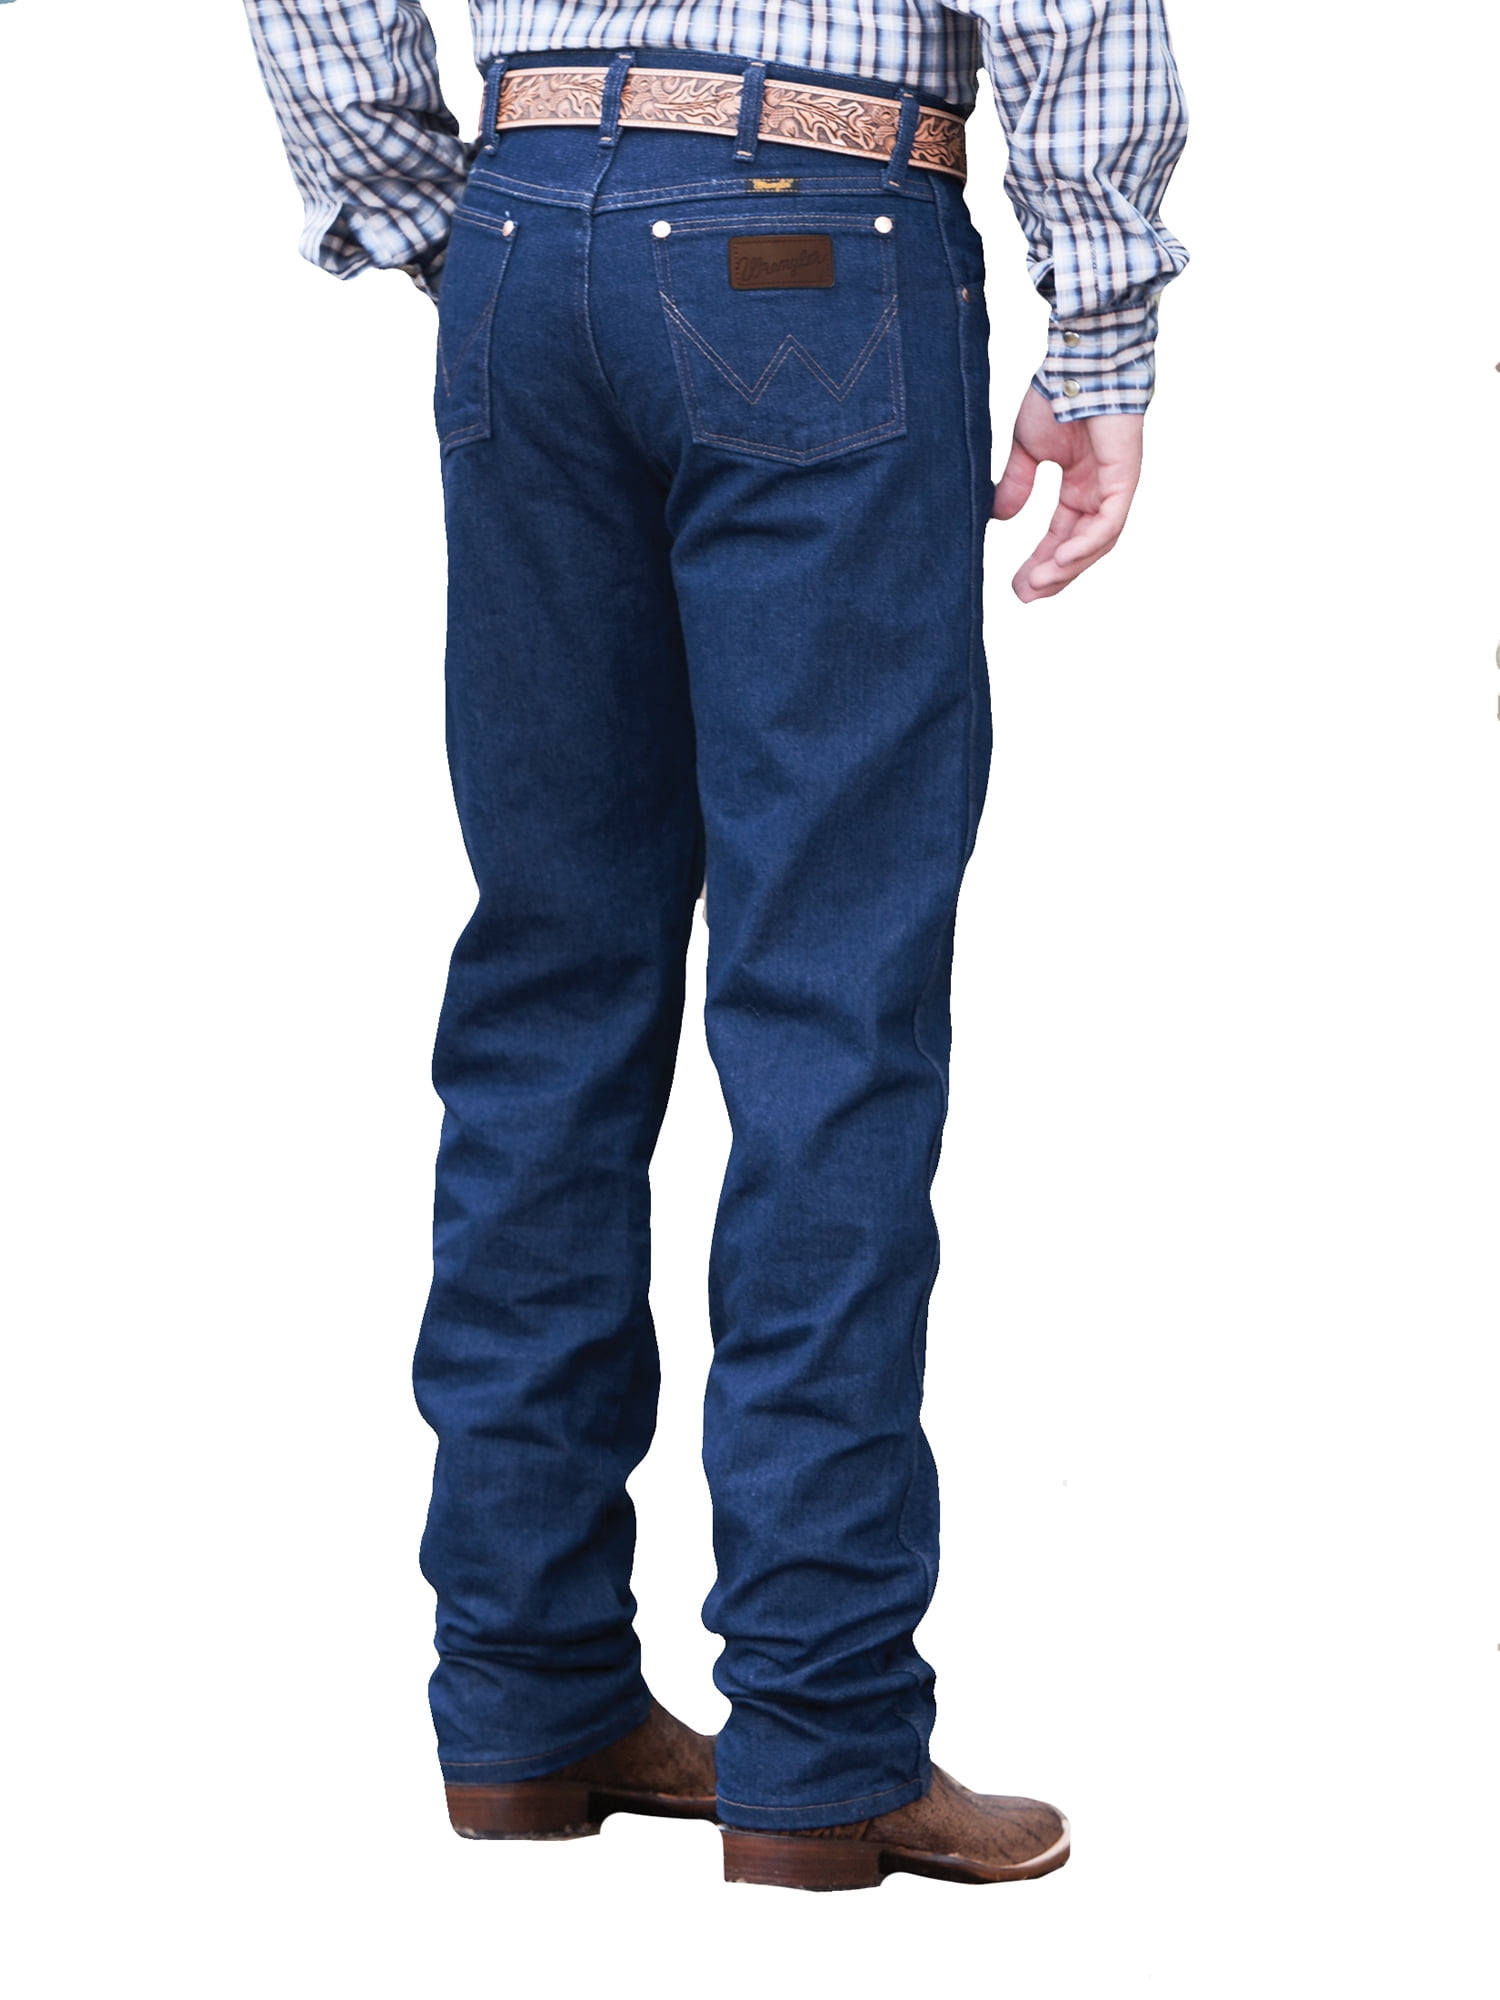 Wrangler Original Prewashed Indigo Jeans 37-36 - Walmart.com